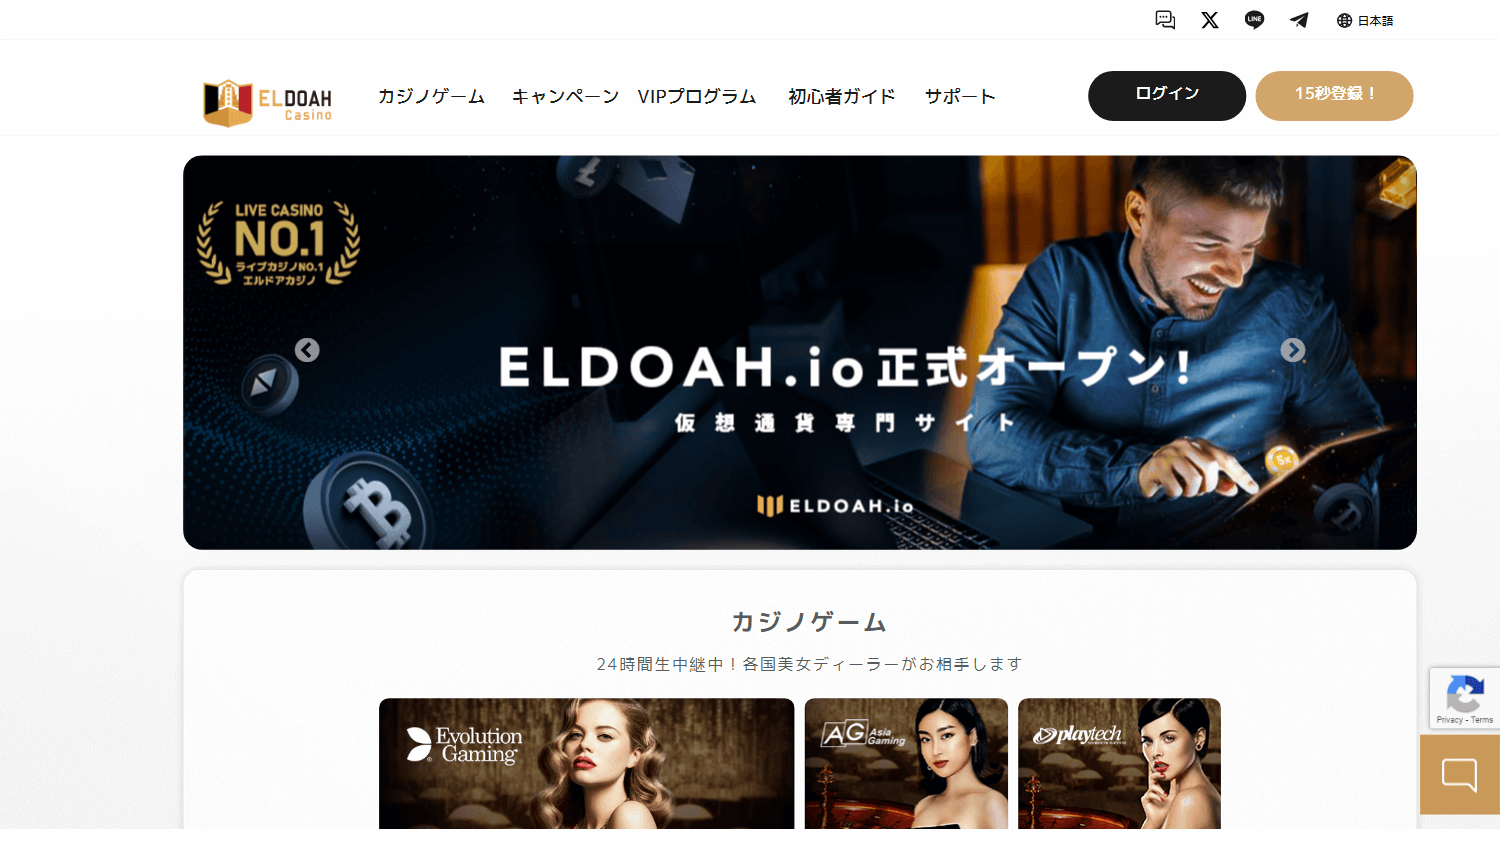 eldoah_casino_homepage_desktop